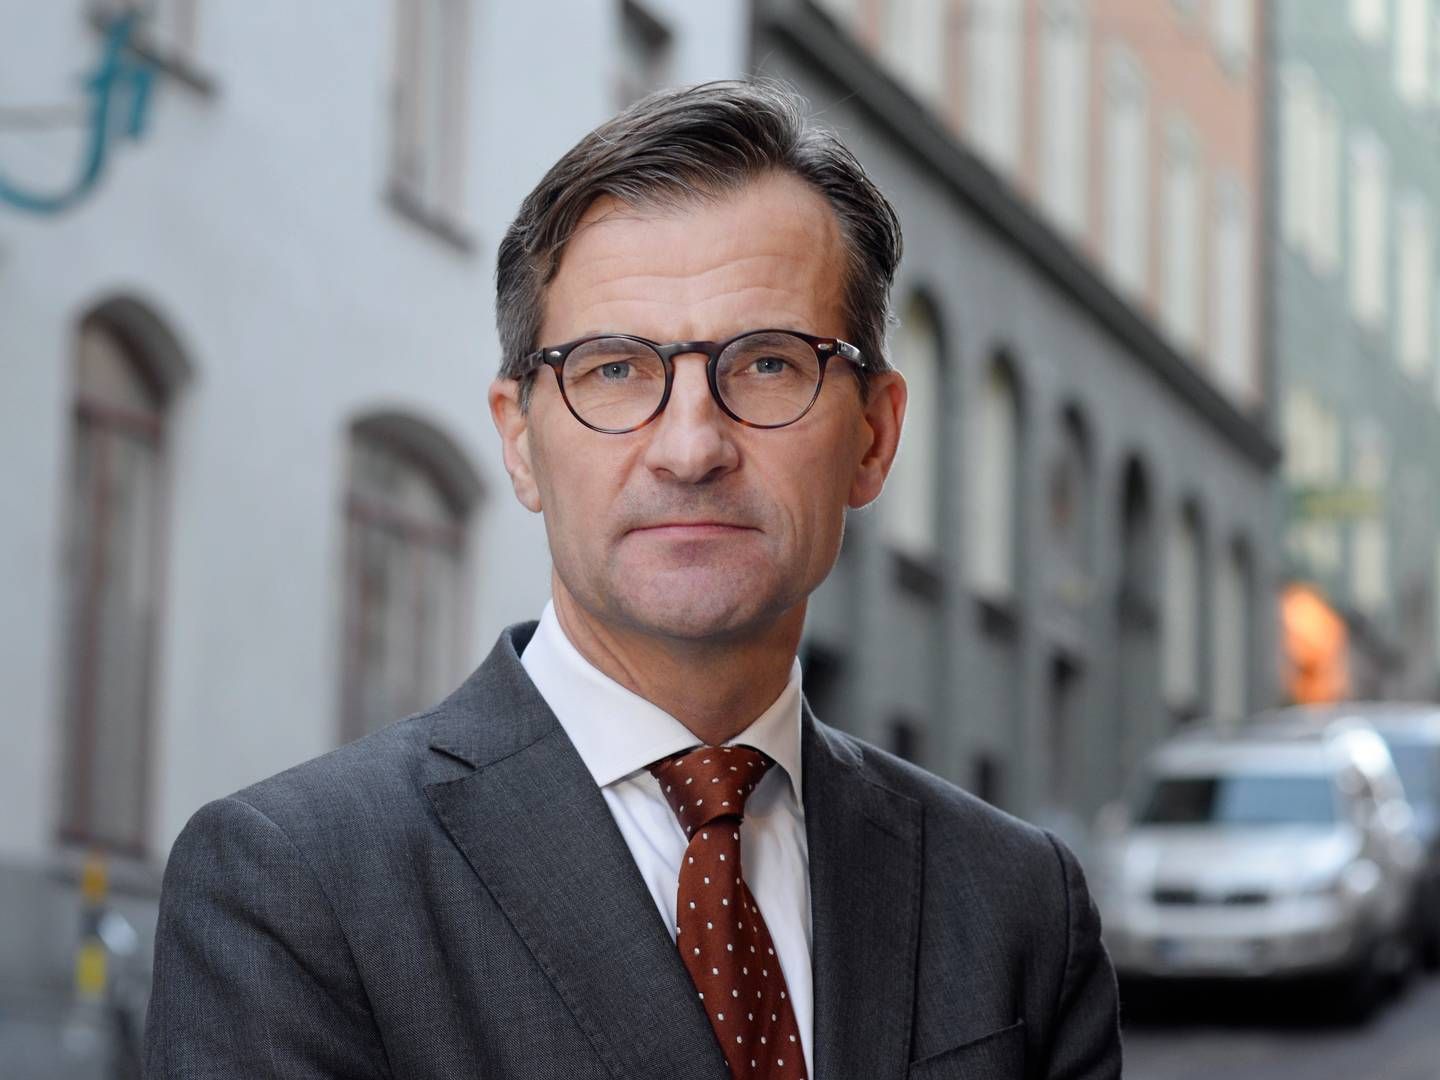 Erik Thedéen er Sveriges nationalbankdirektør. | Photo: Pr/finansinspektionen